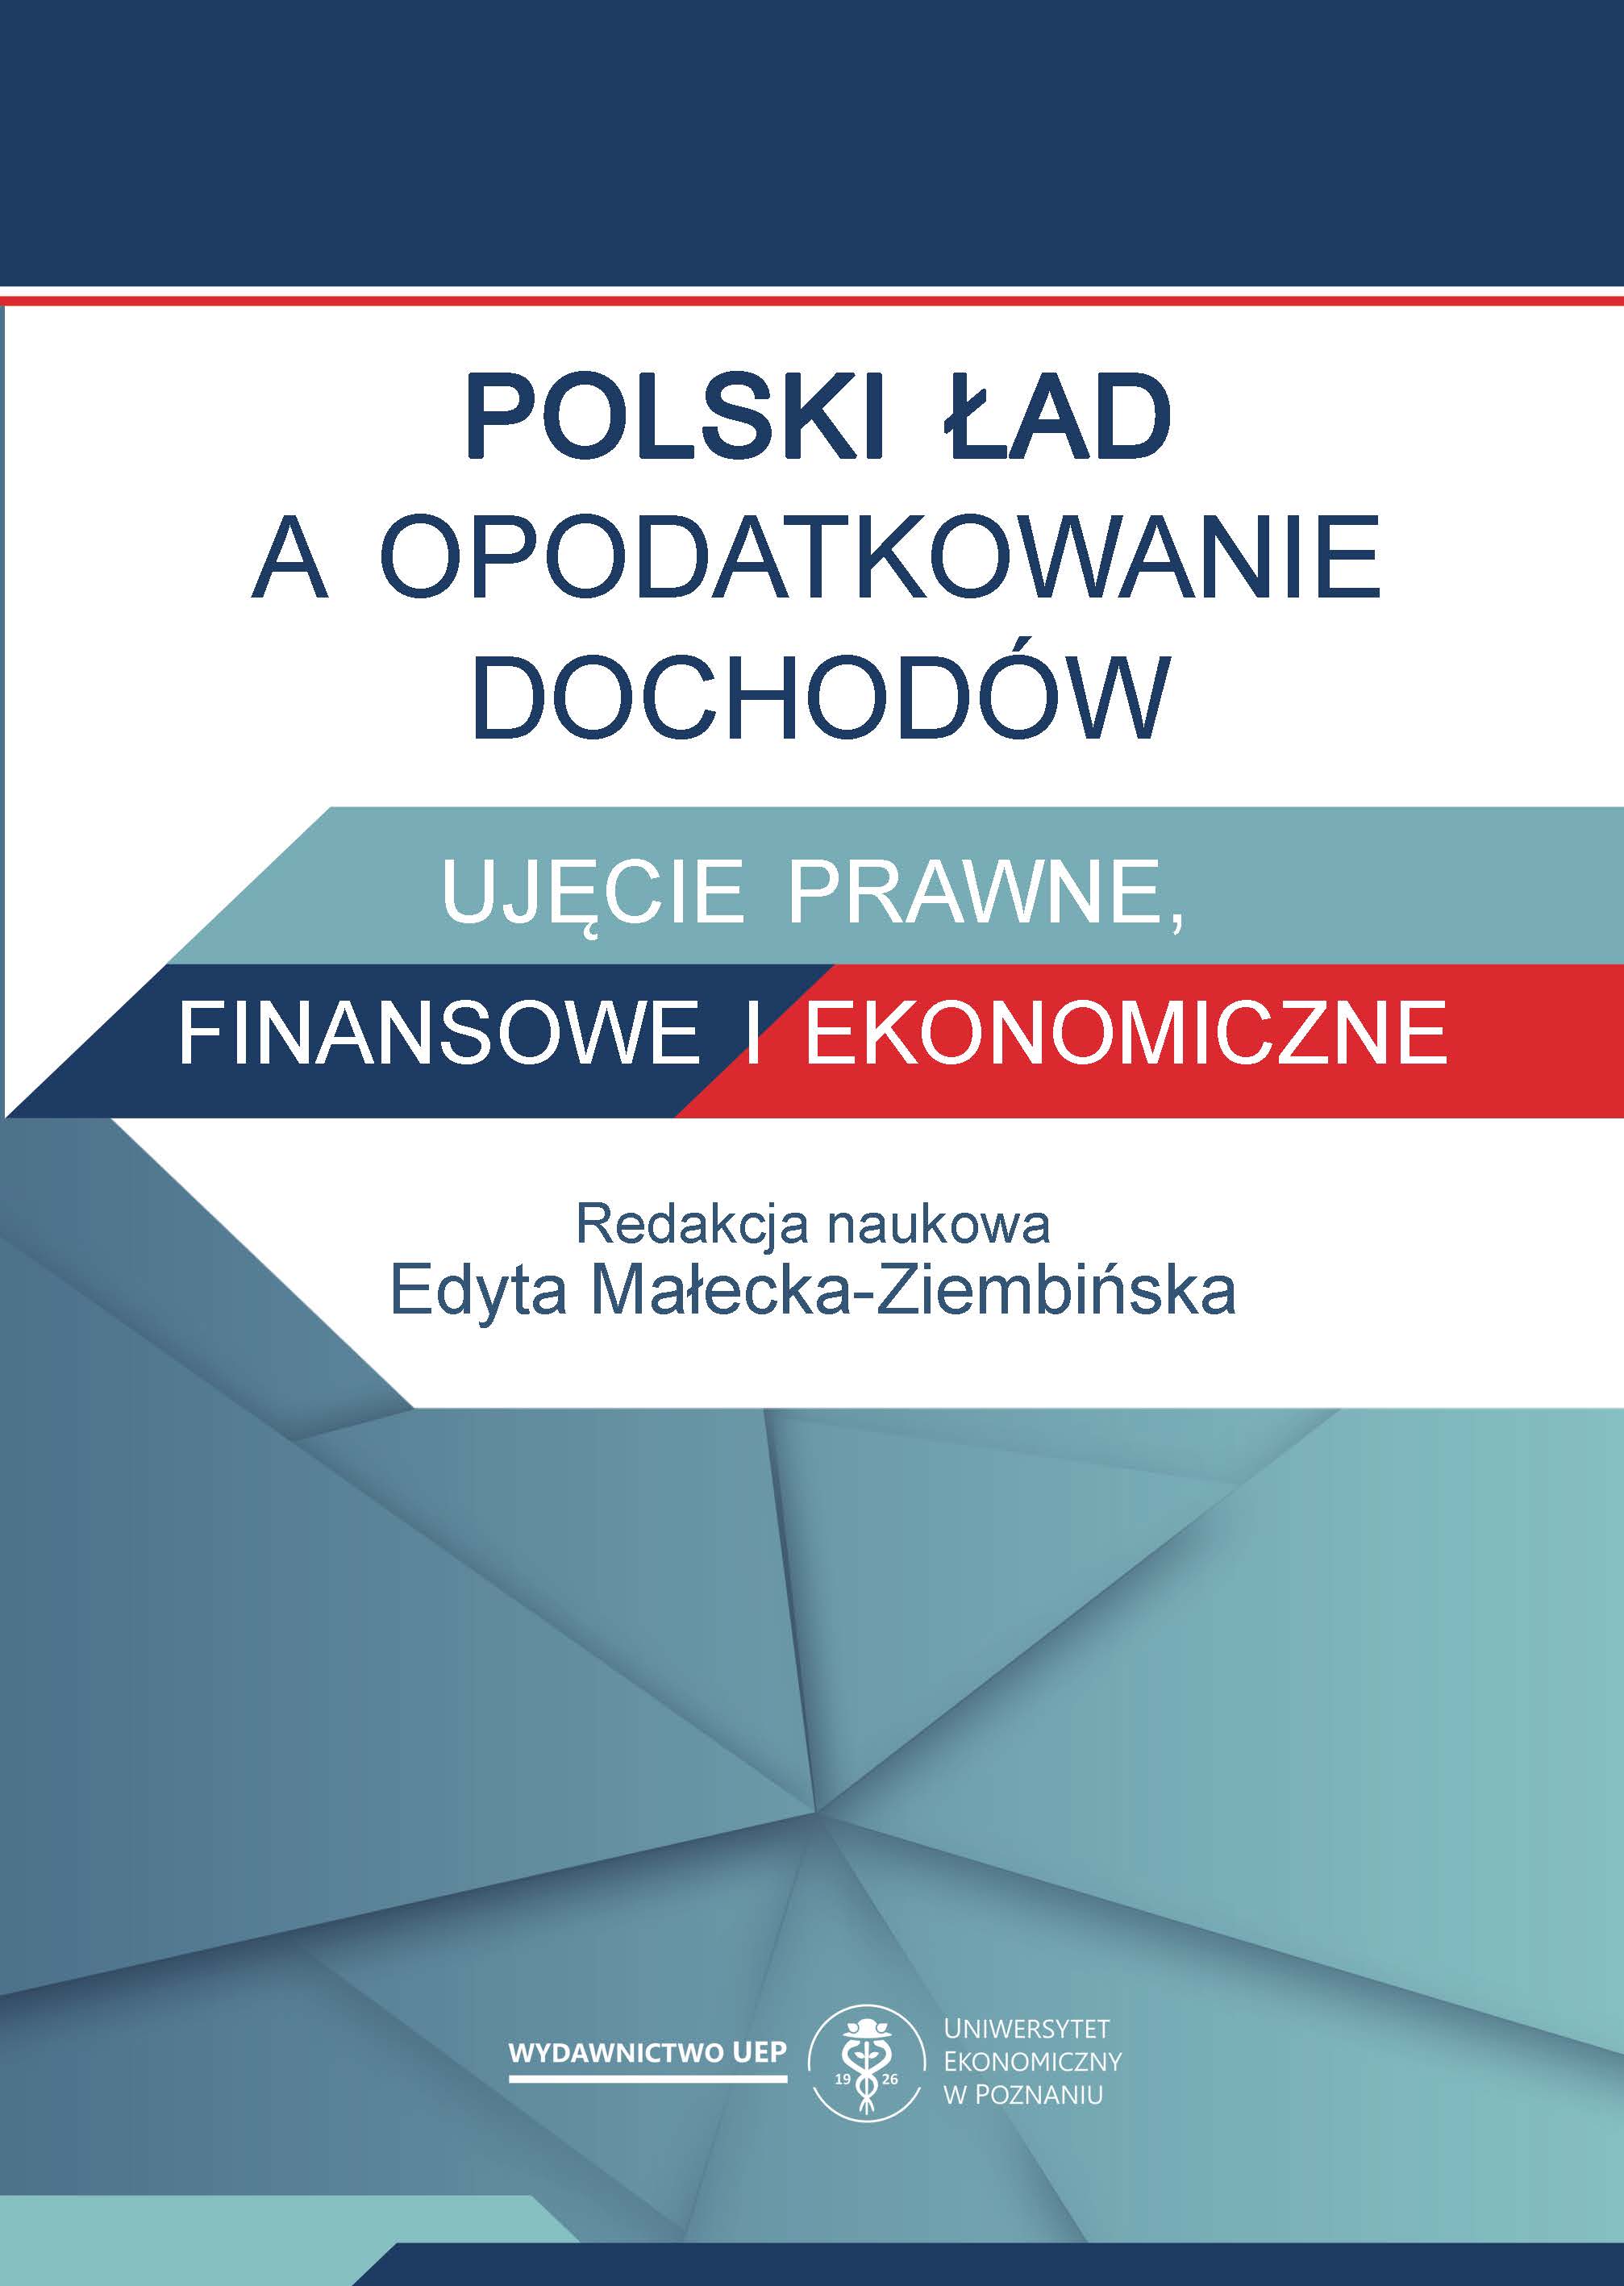 Polski Ład z perspektywy progresji podatkowej i rozwiązań prorodzinnych